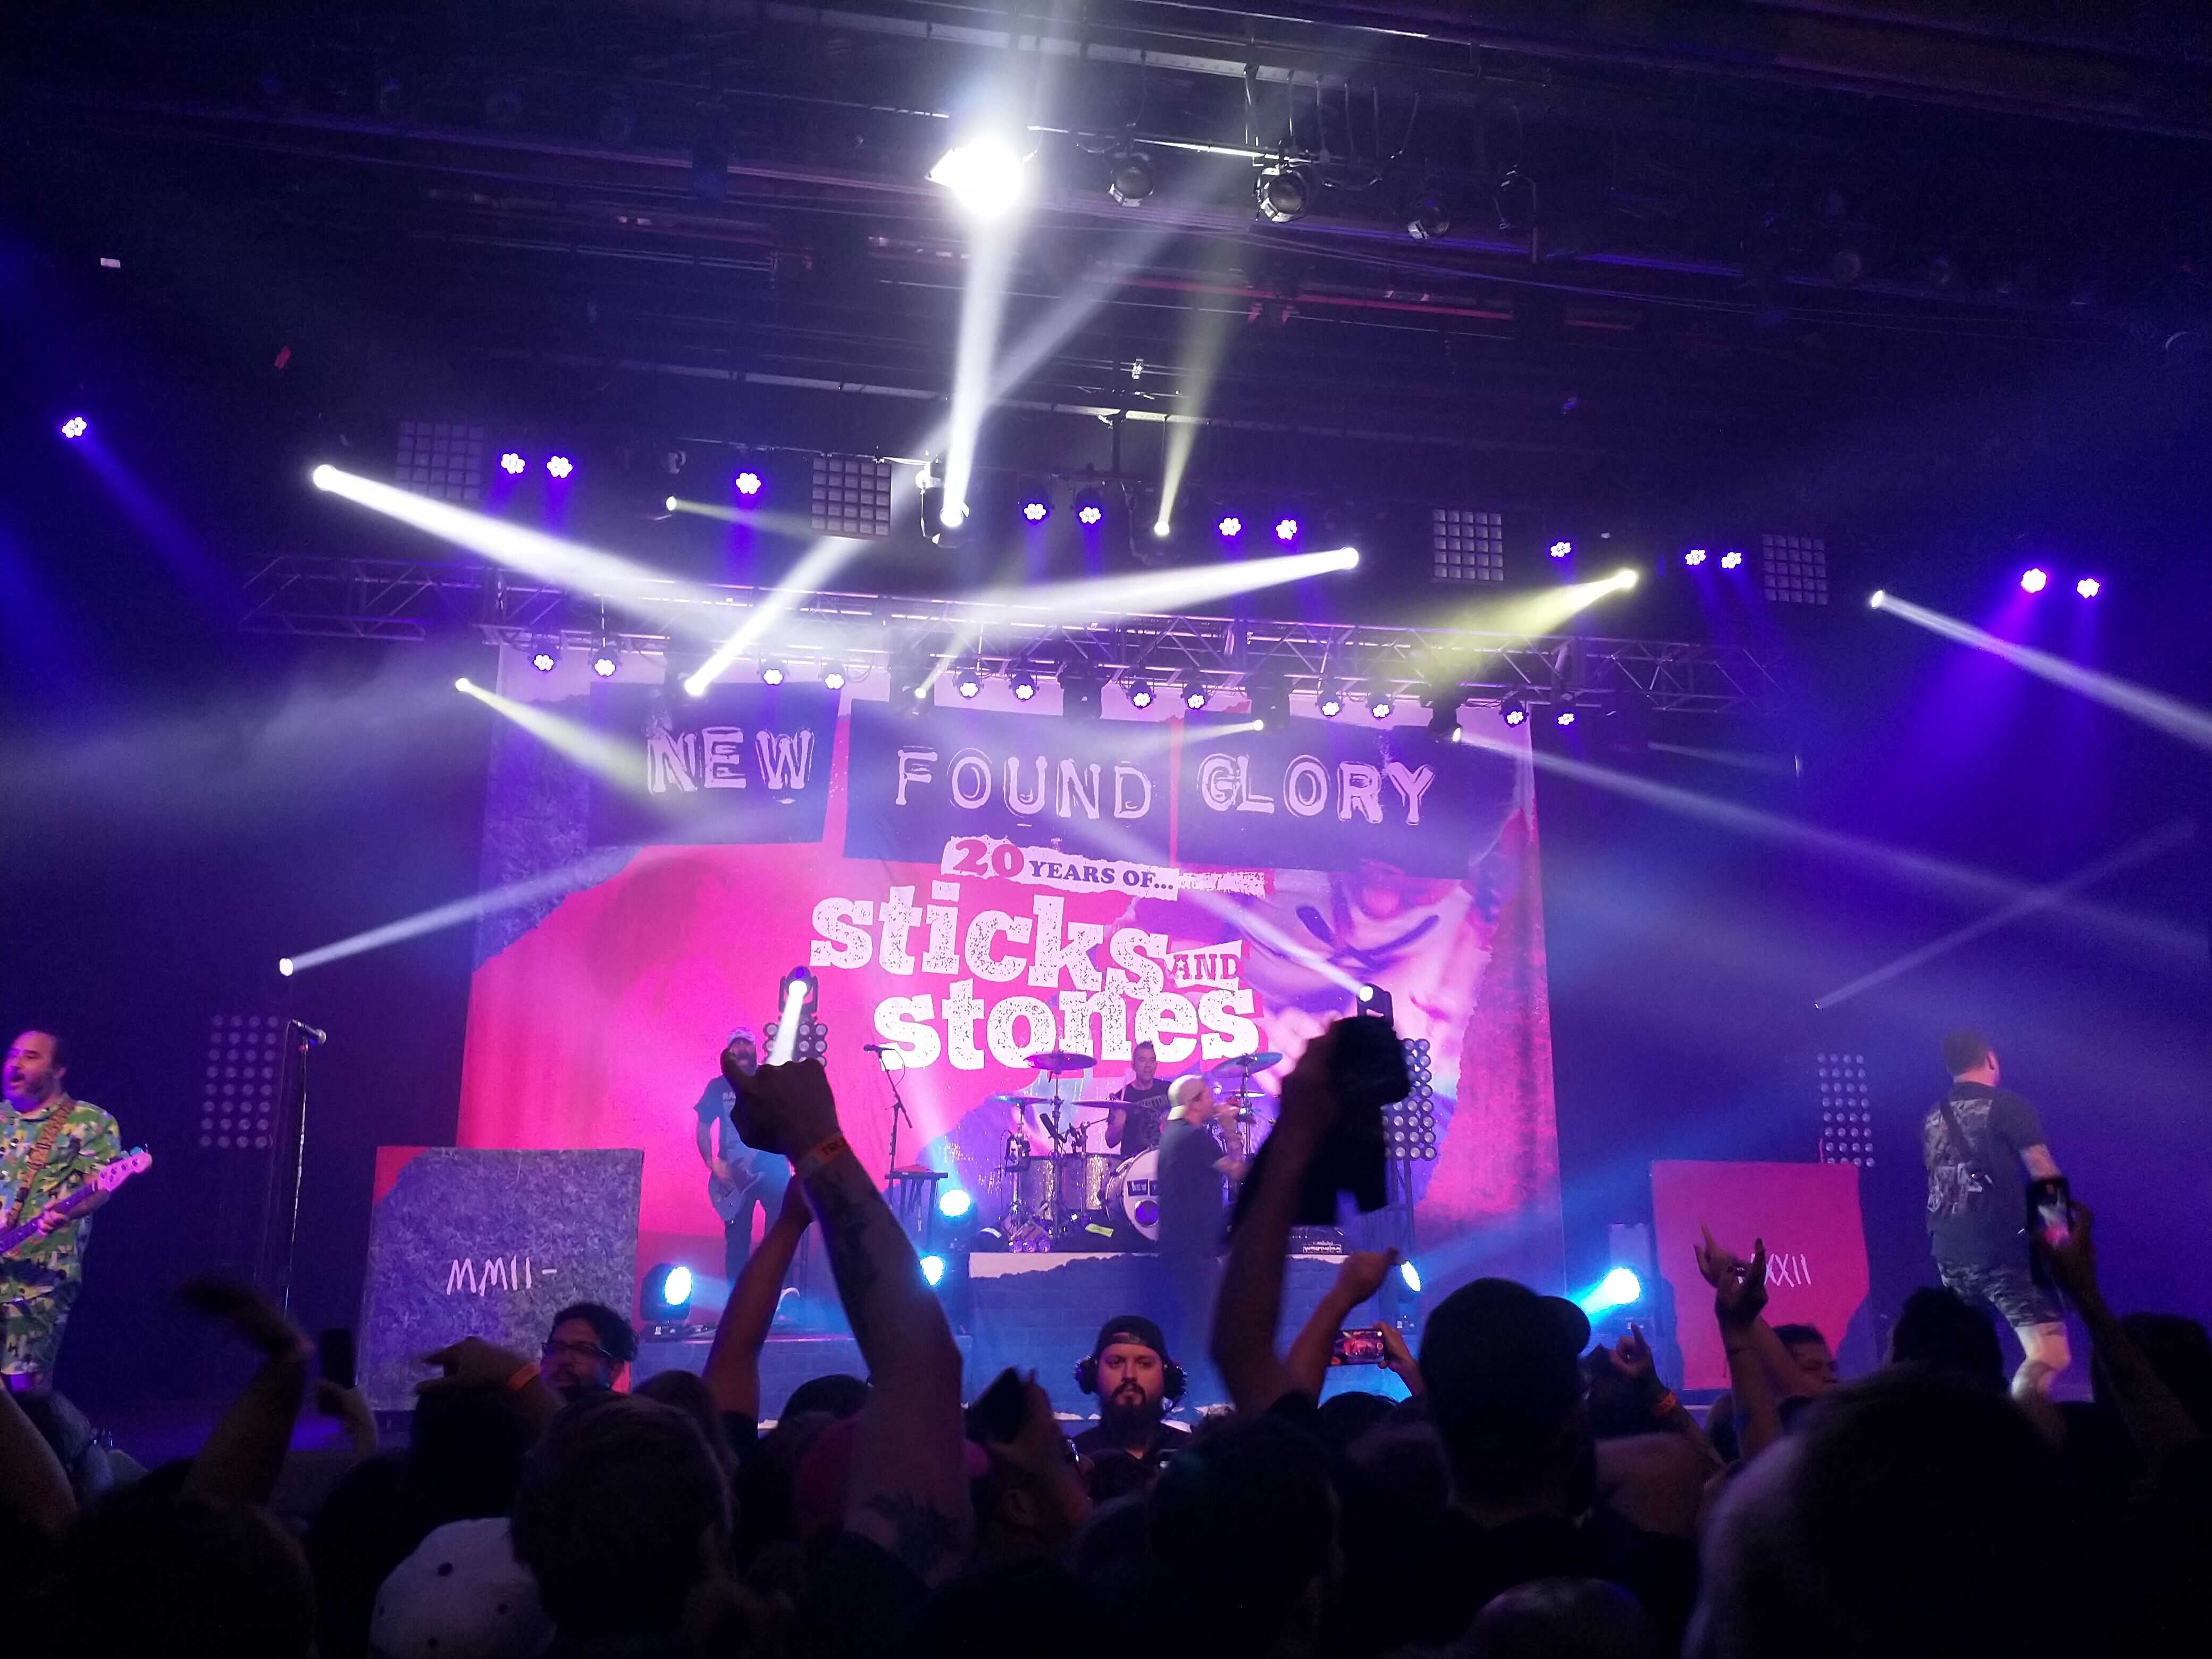 New Found Glory playing at the Riverside Municipal Auditorium.